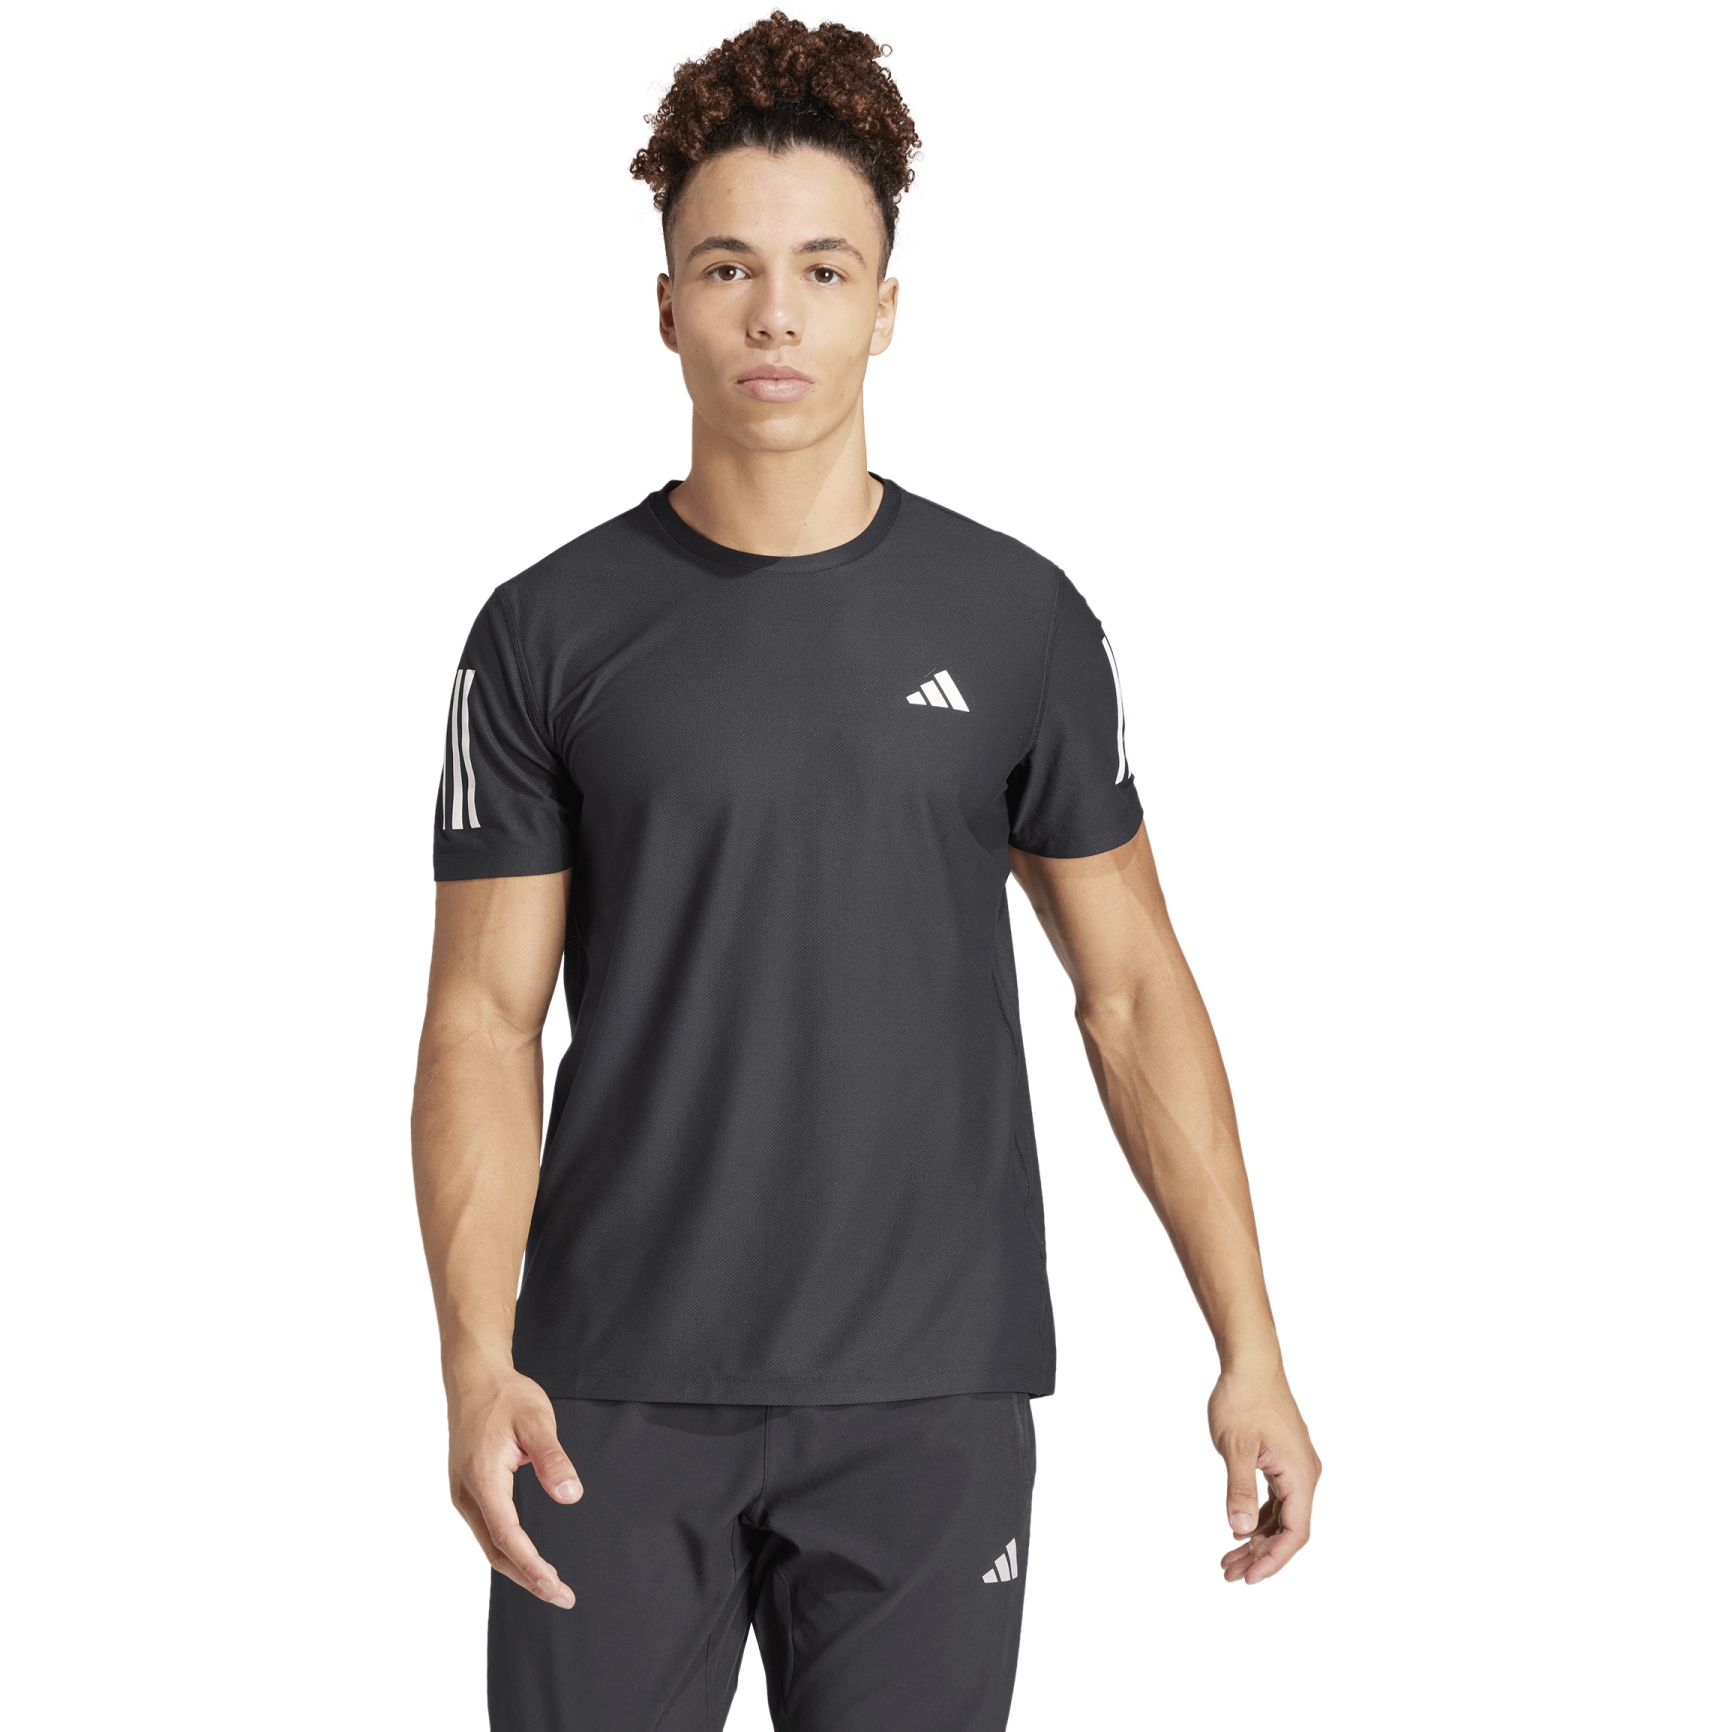 Produktbild von adidas Own The Run Laufshirt Herren - schwarz IN1500